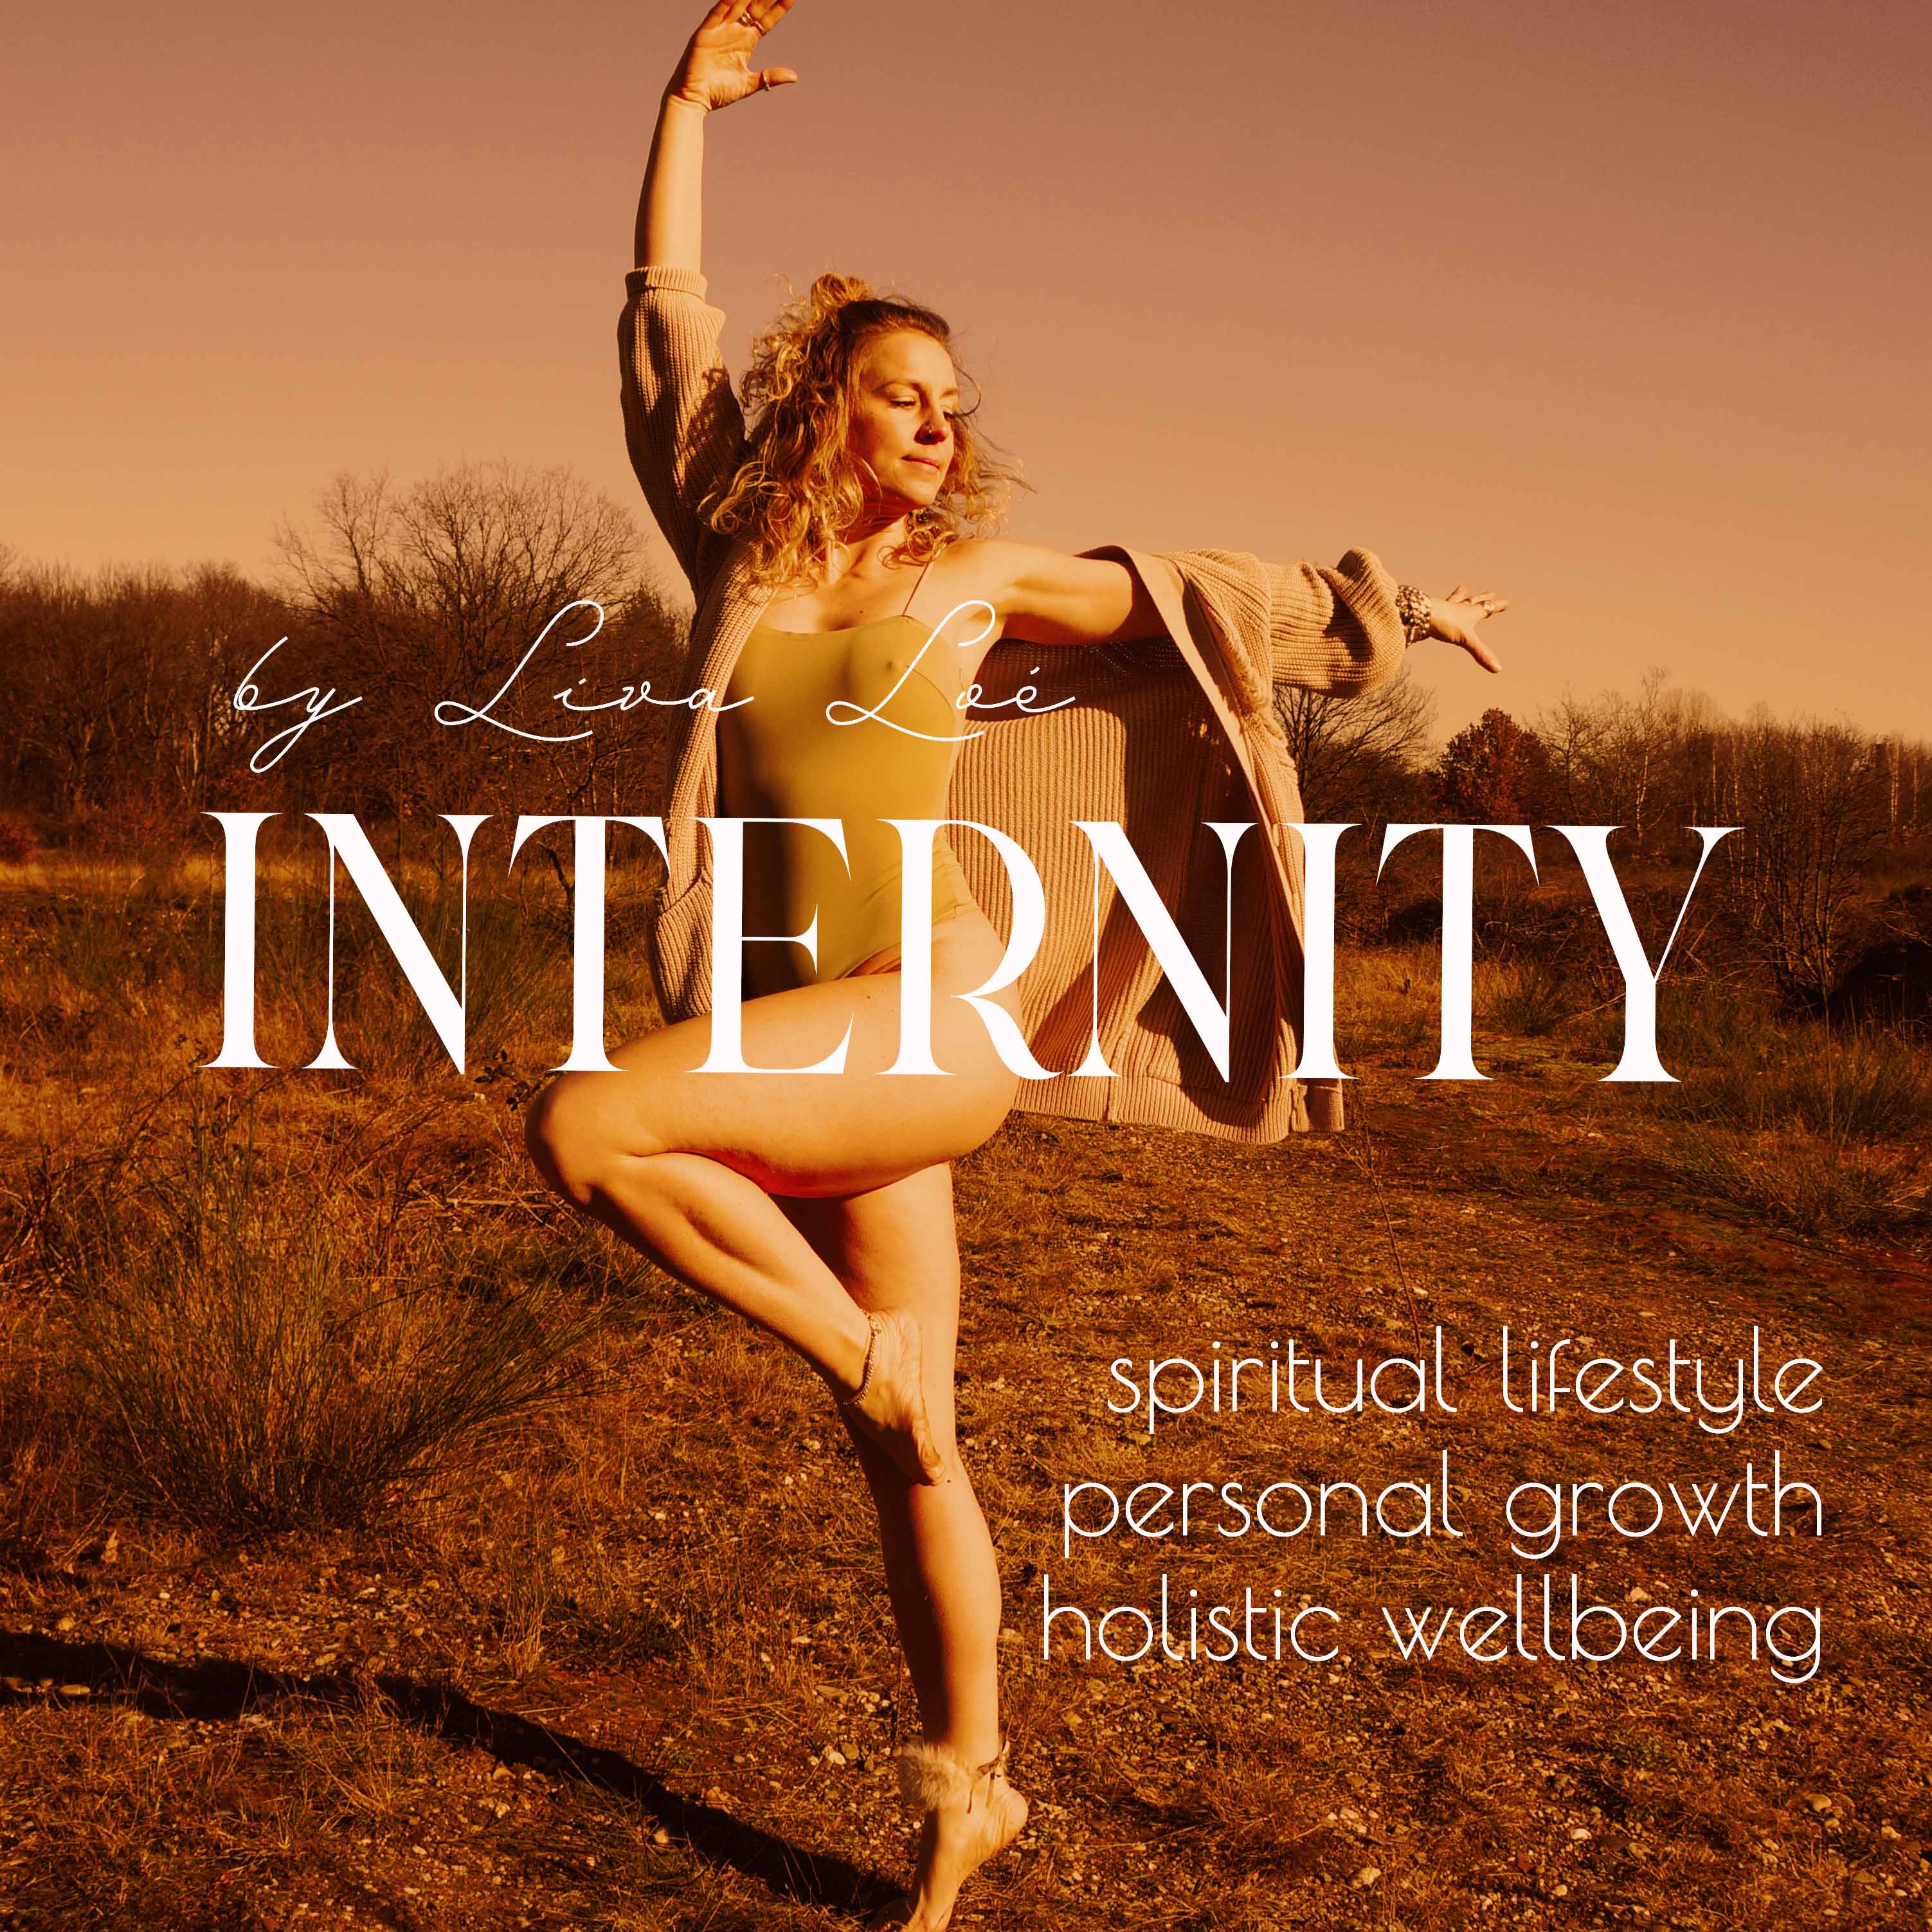 Cover Bild des Internity Podcasts